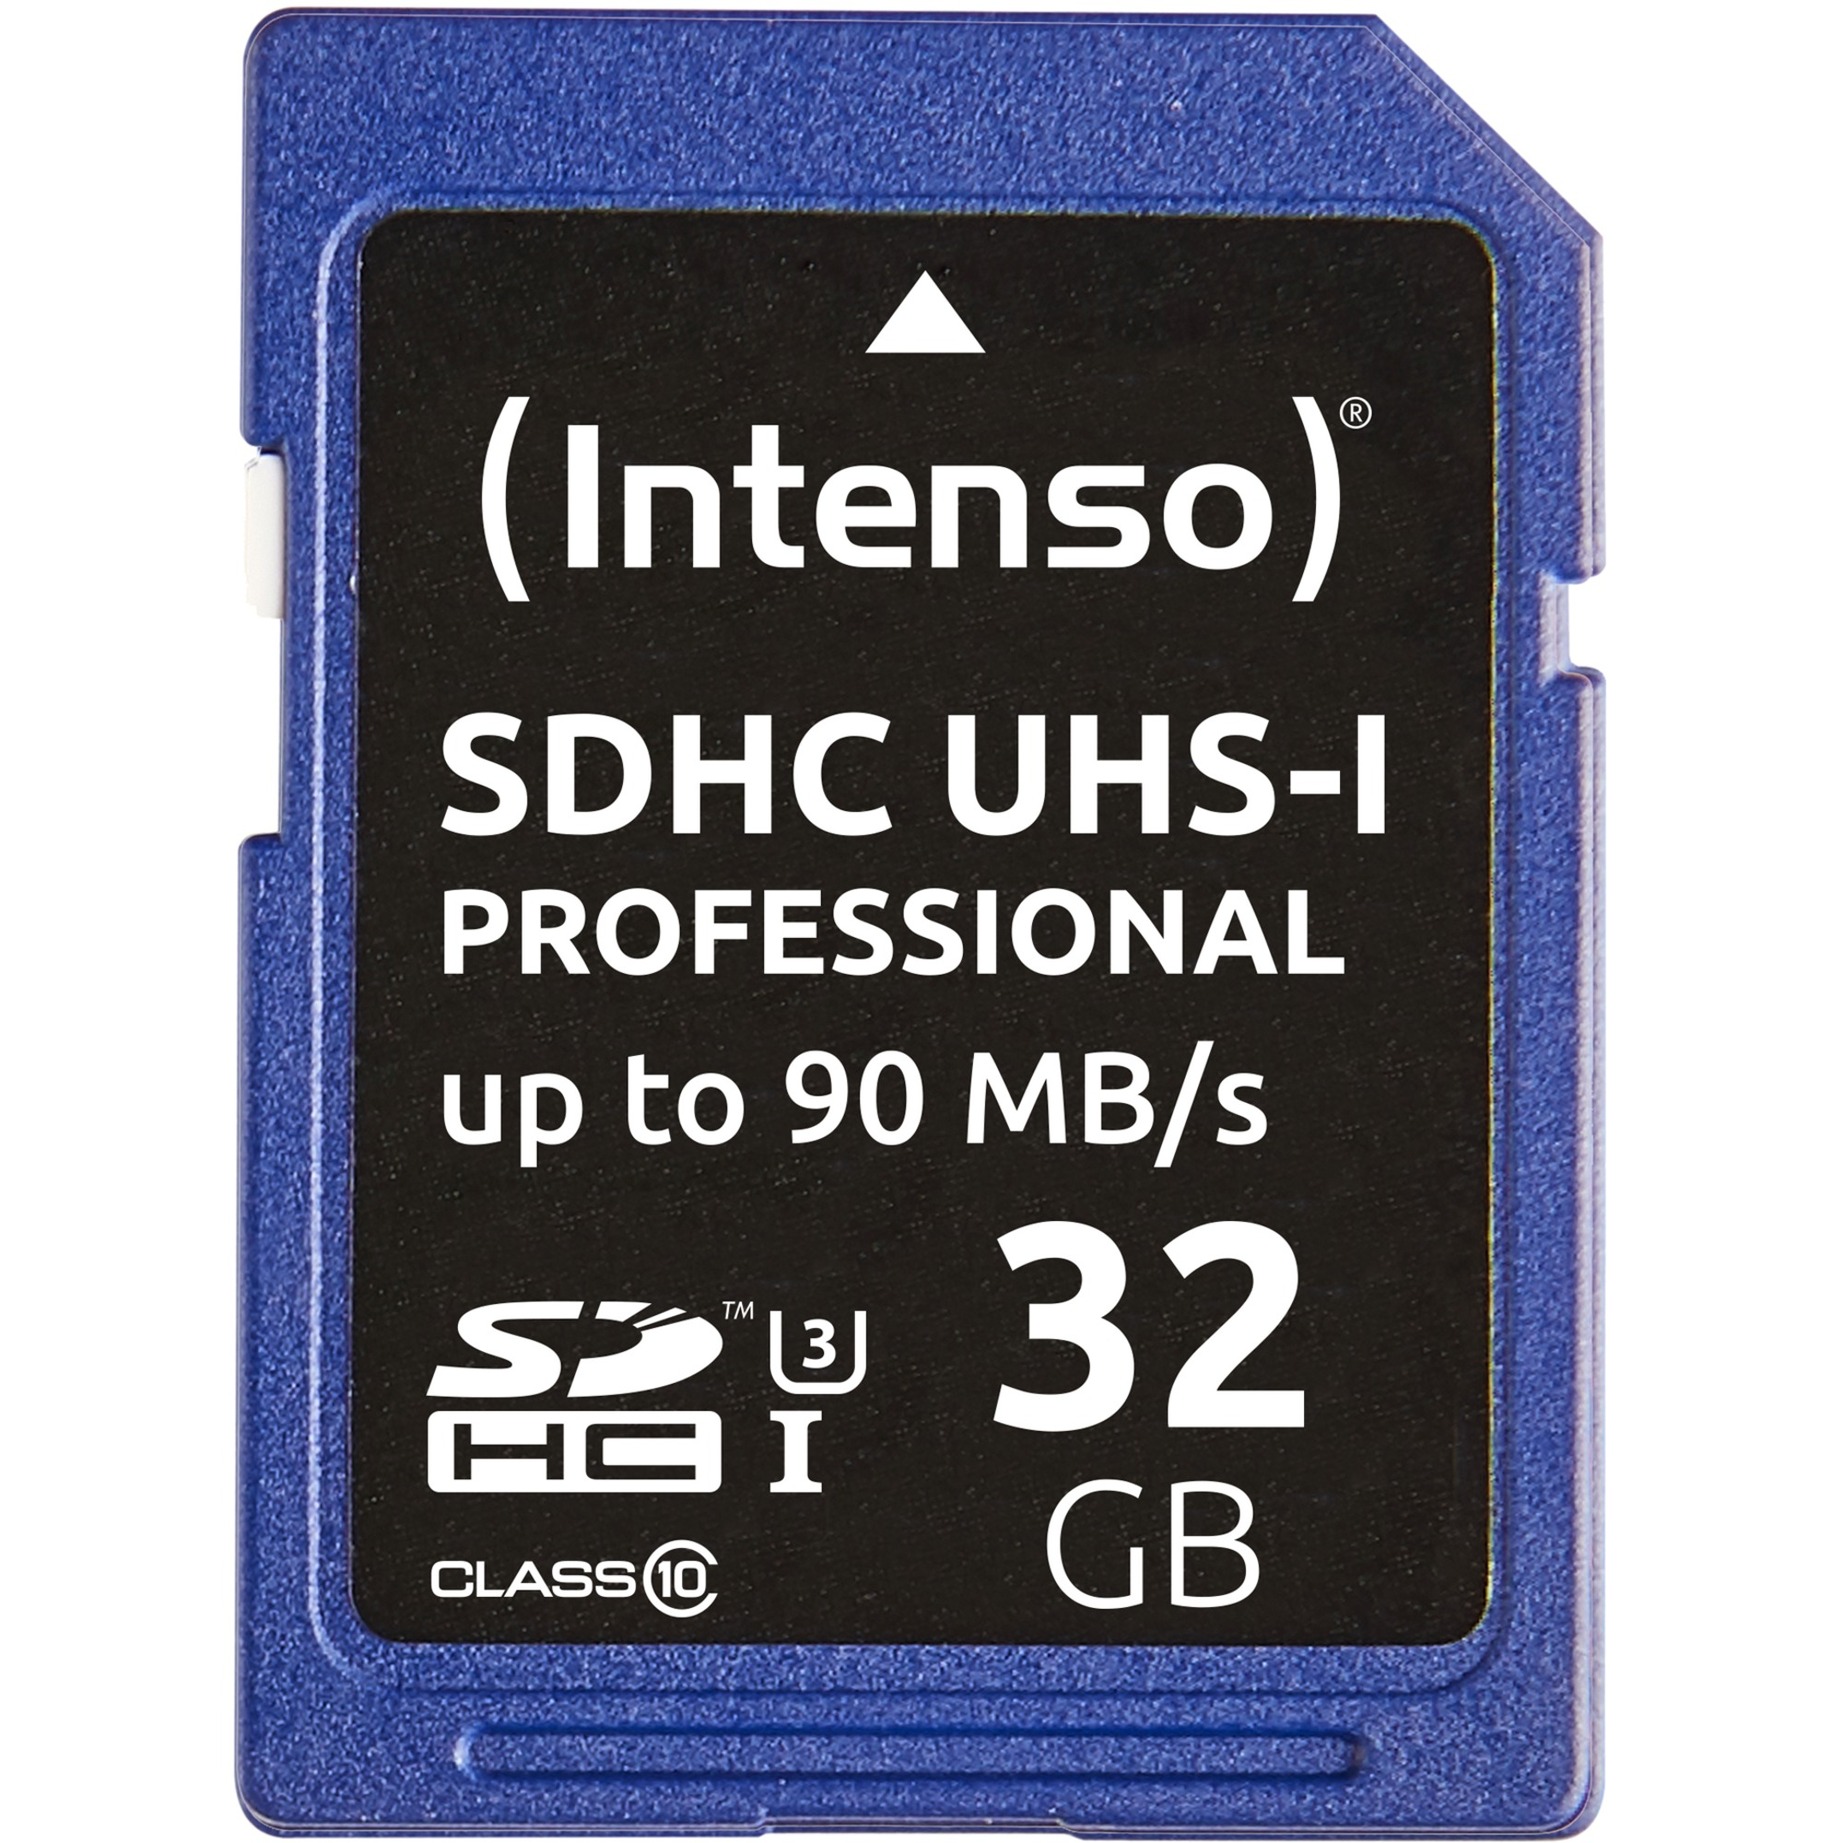 Image of Alternate - 32 GB SDHC, Speicherkarte online einkaufen bei Alternate